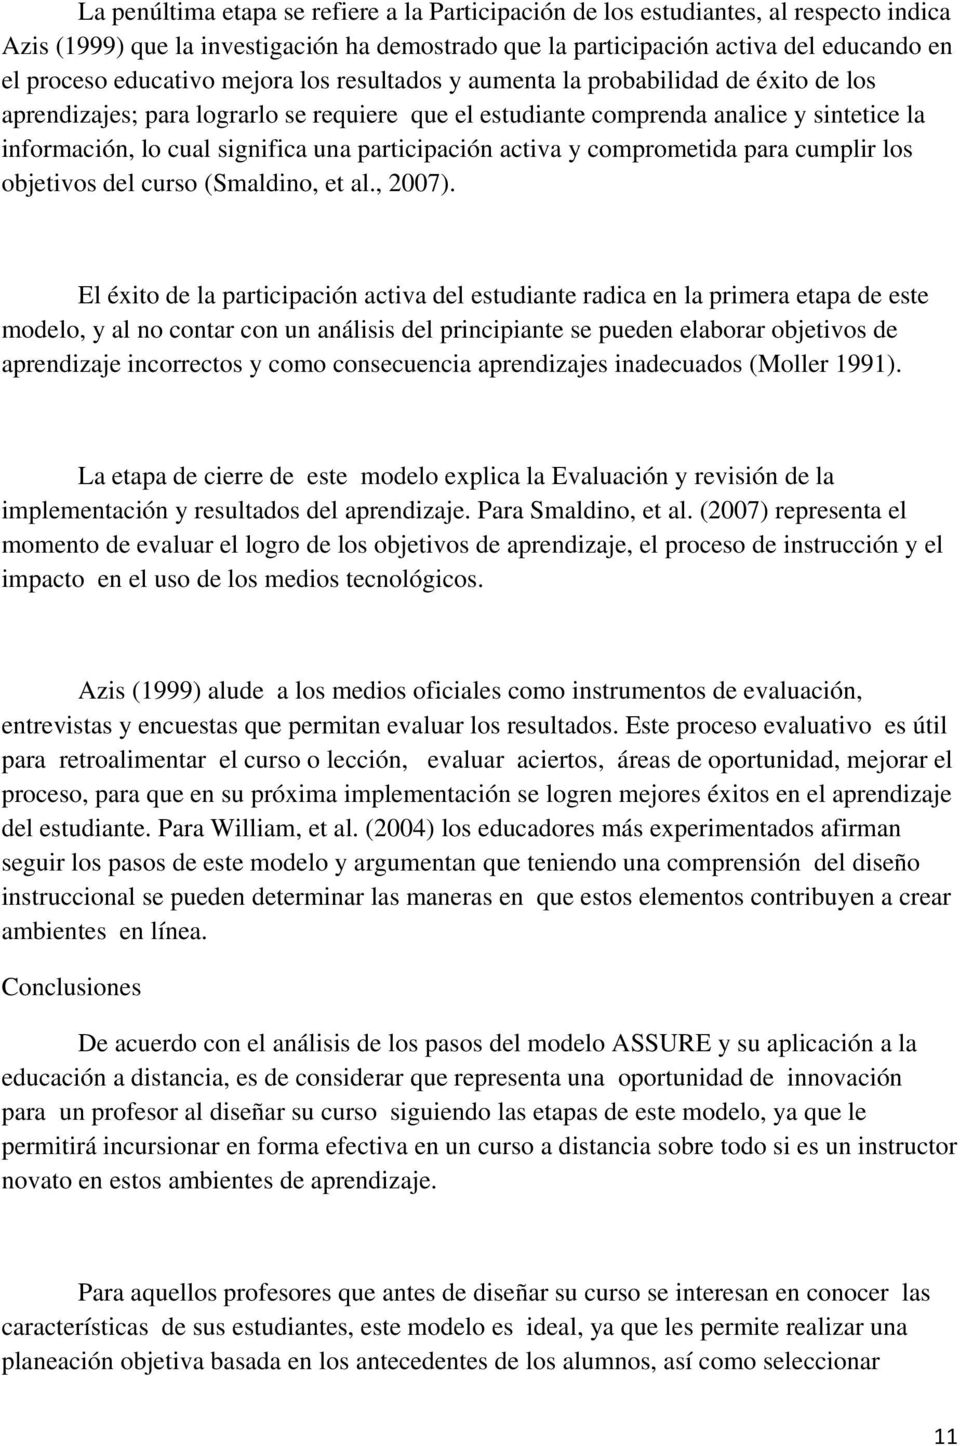 participación activa y comprometida para cumplir los objetivos del curso (Smaldino, et al., 2007).